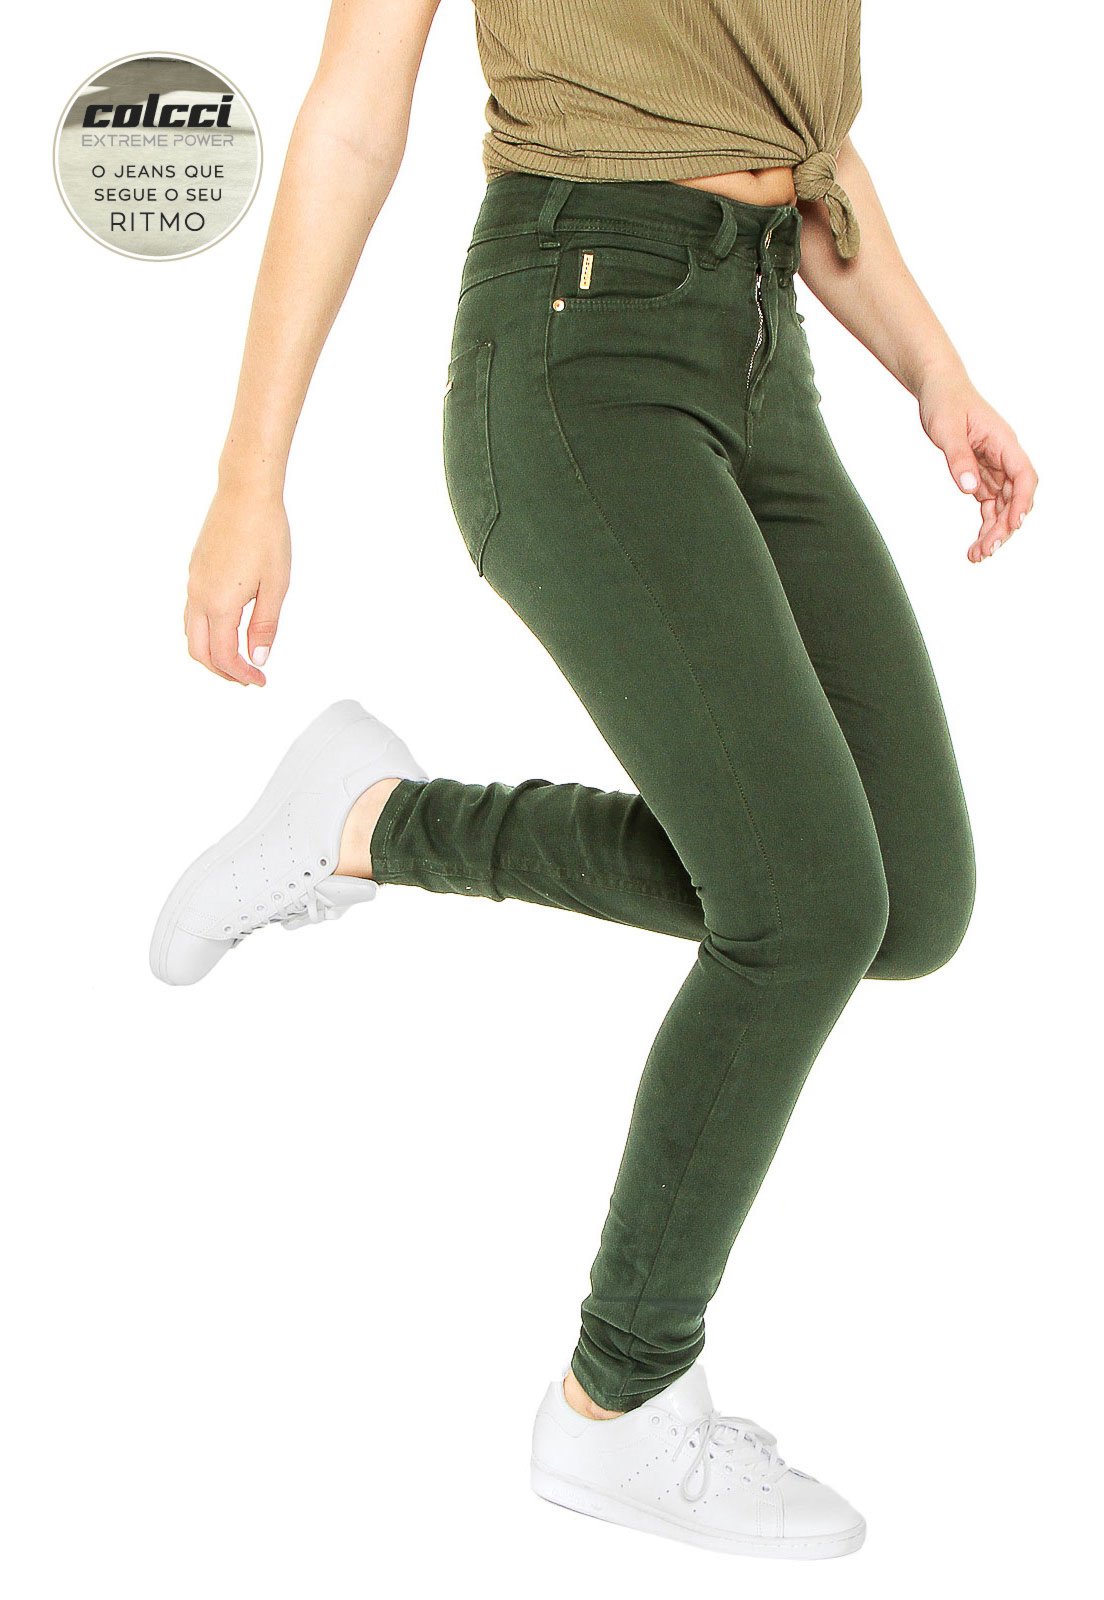 calça verde colcci feminina